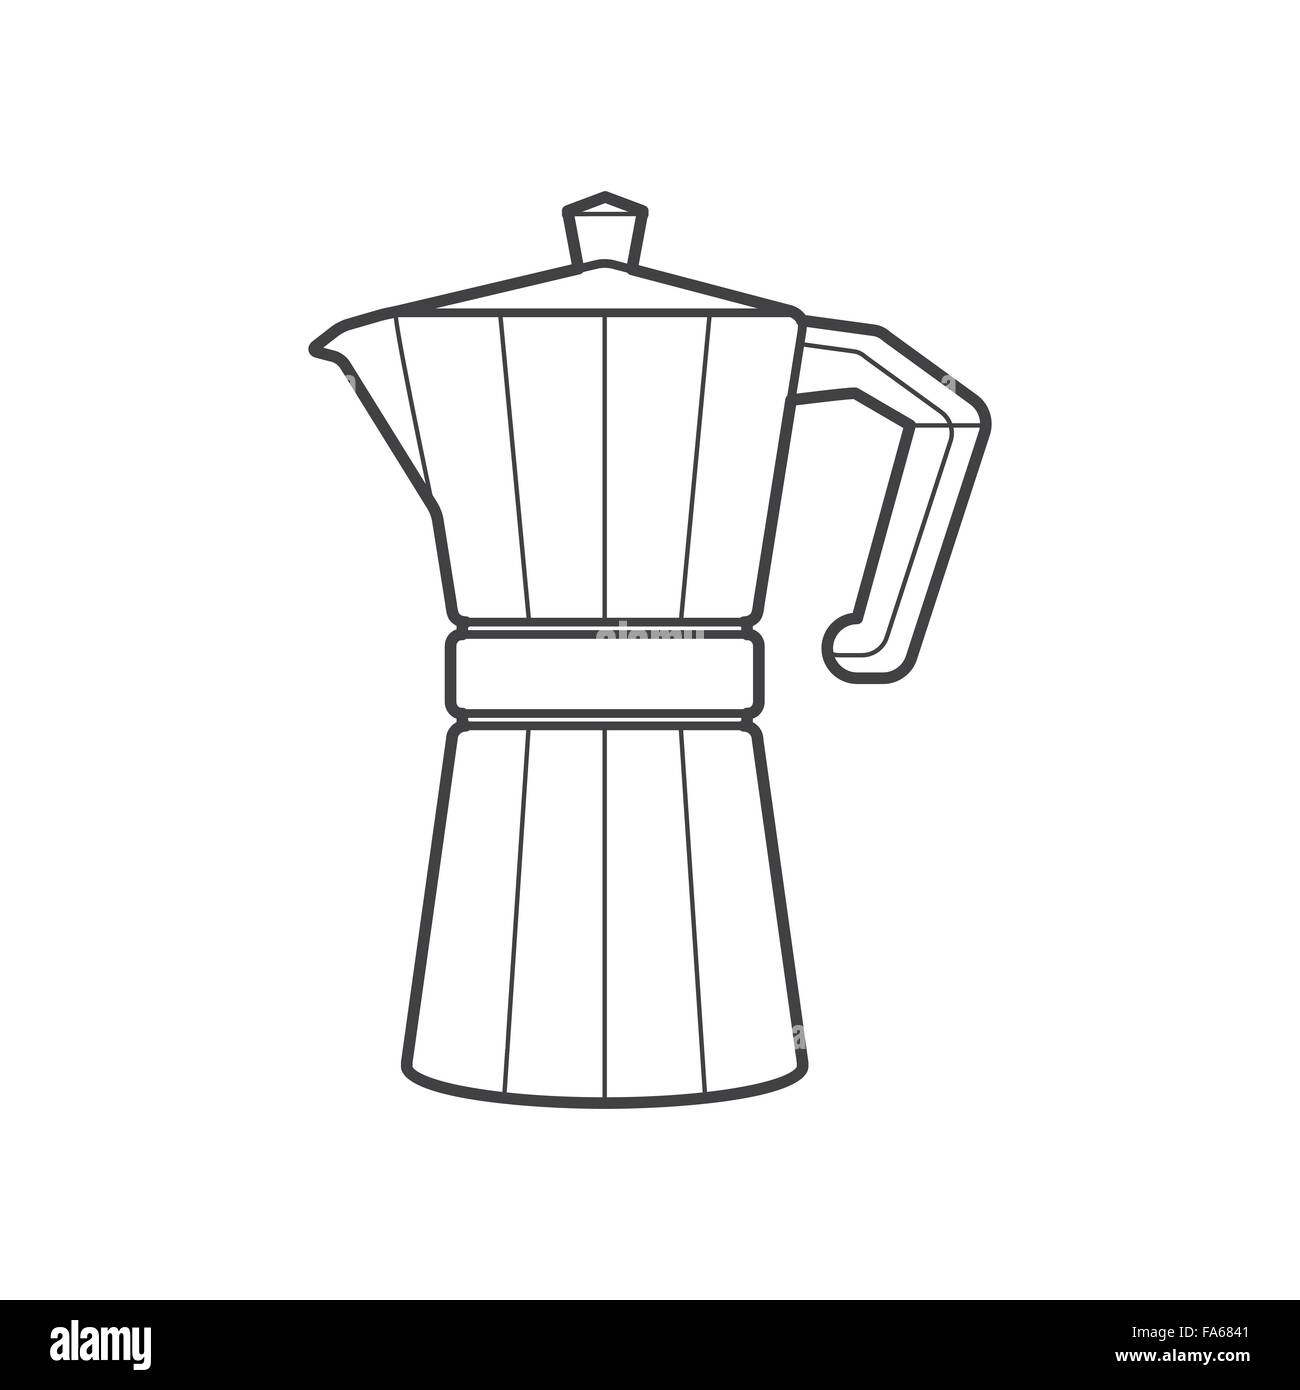 Vektor-monochrome Kontur Metall Retro-italienische Kaffeemaschine mit Kappe und Griff isoliert schwarzen Umriss Abbildung auf weiße Rückseite Stock Vektor